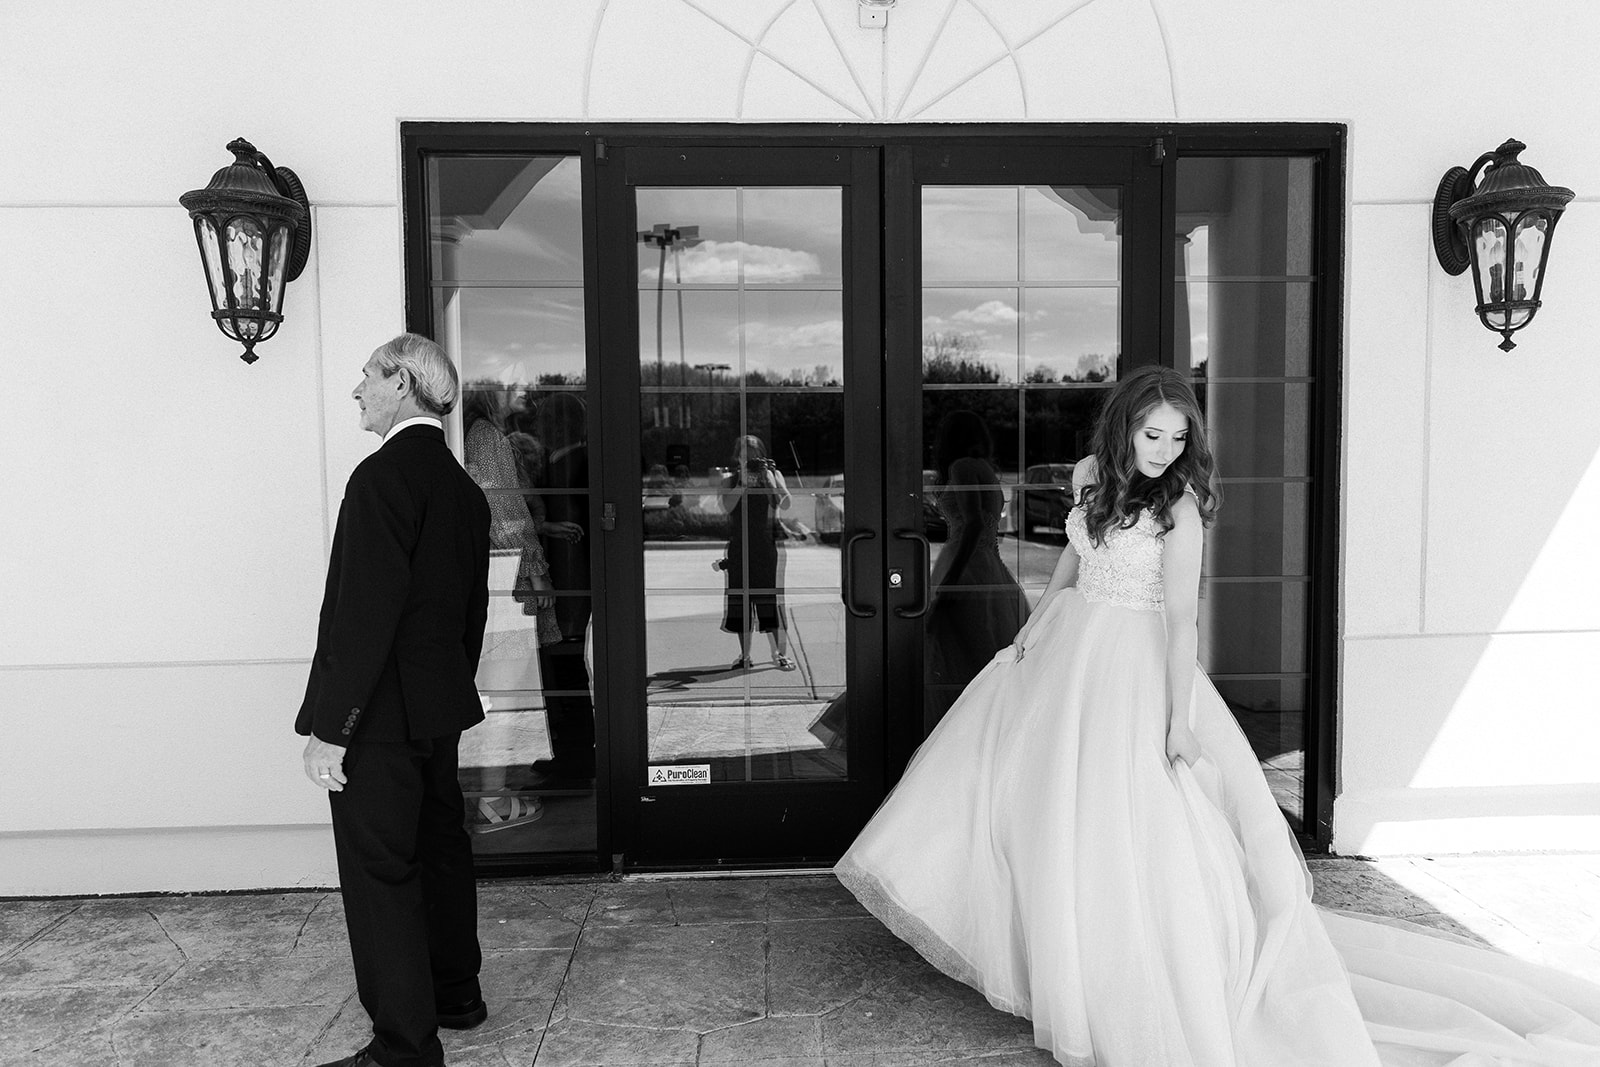 An Elegant Wedding Day At Crystal Gardens | Maria + Dustin